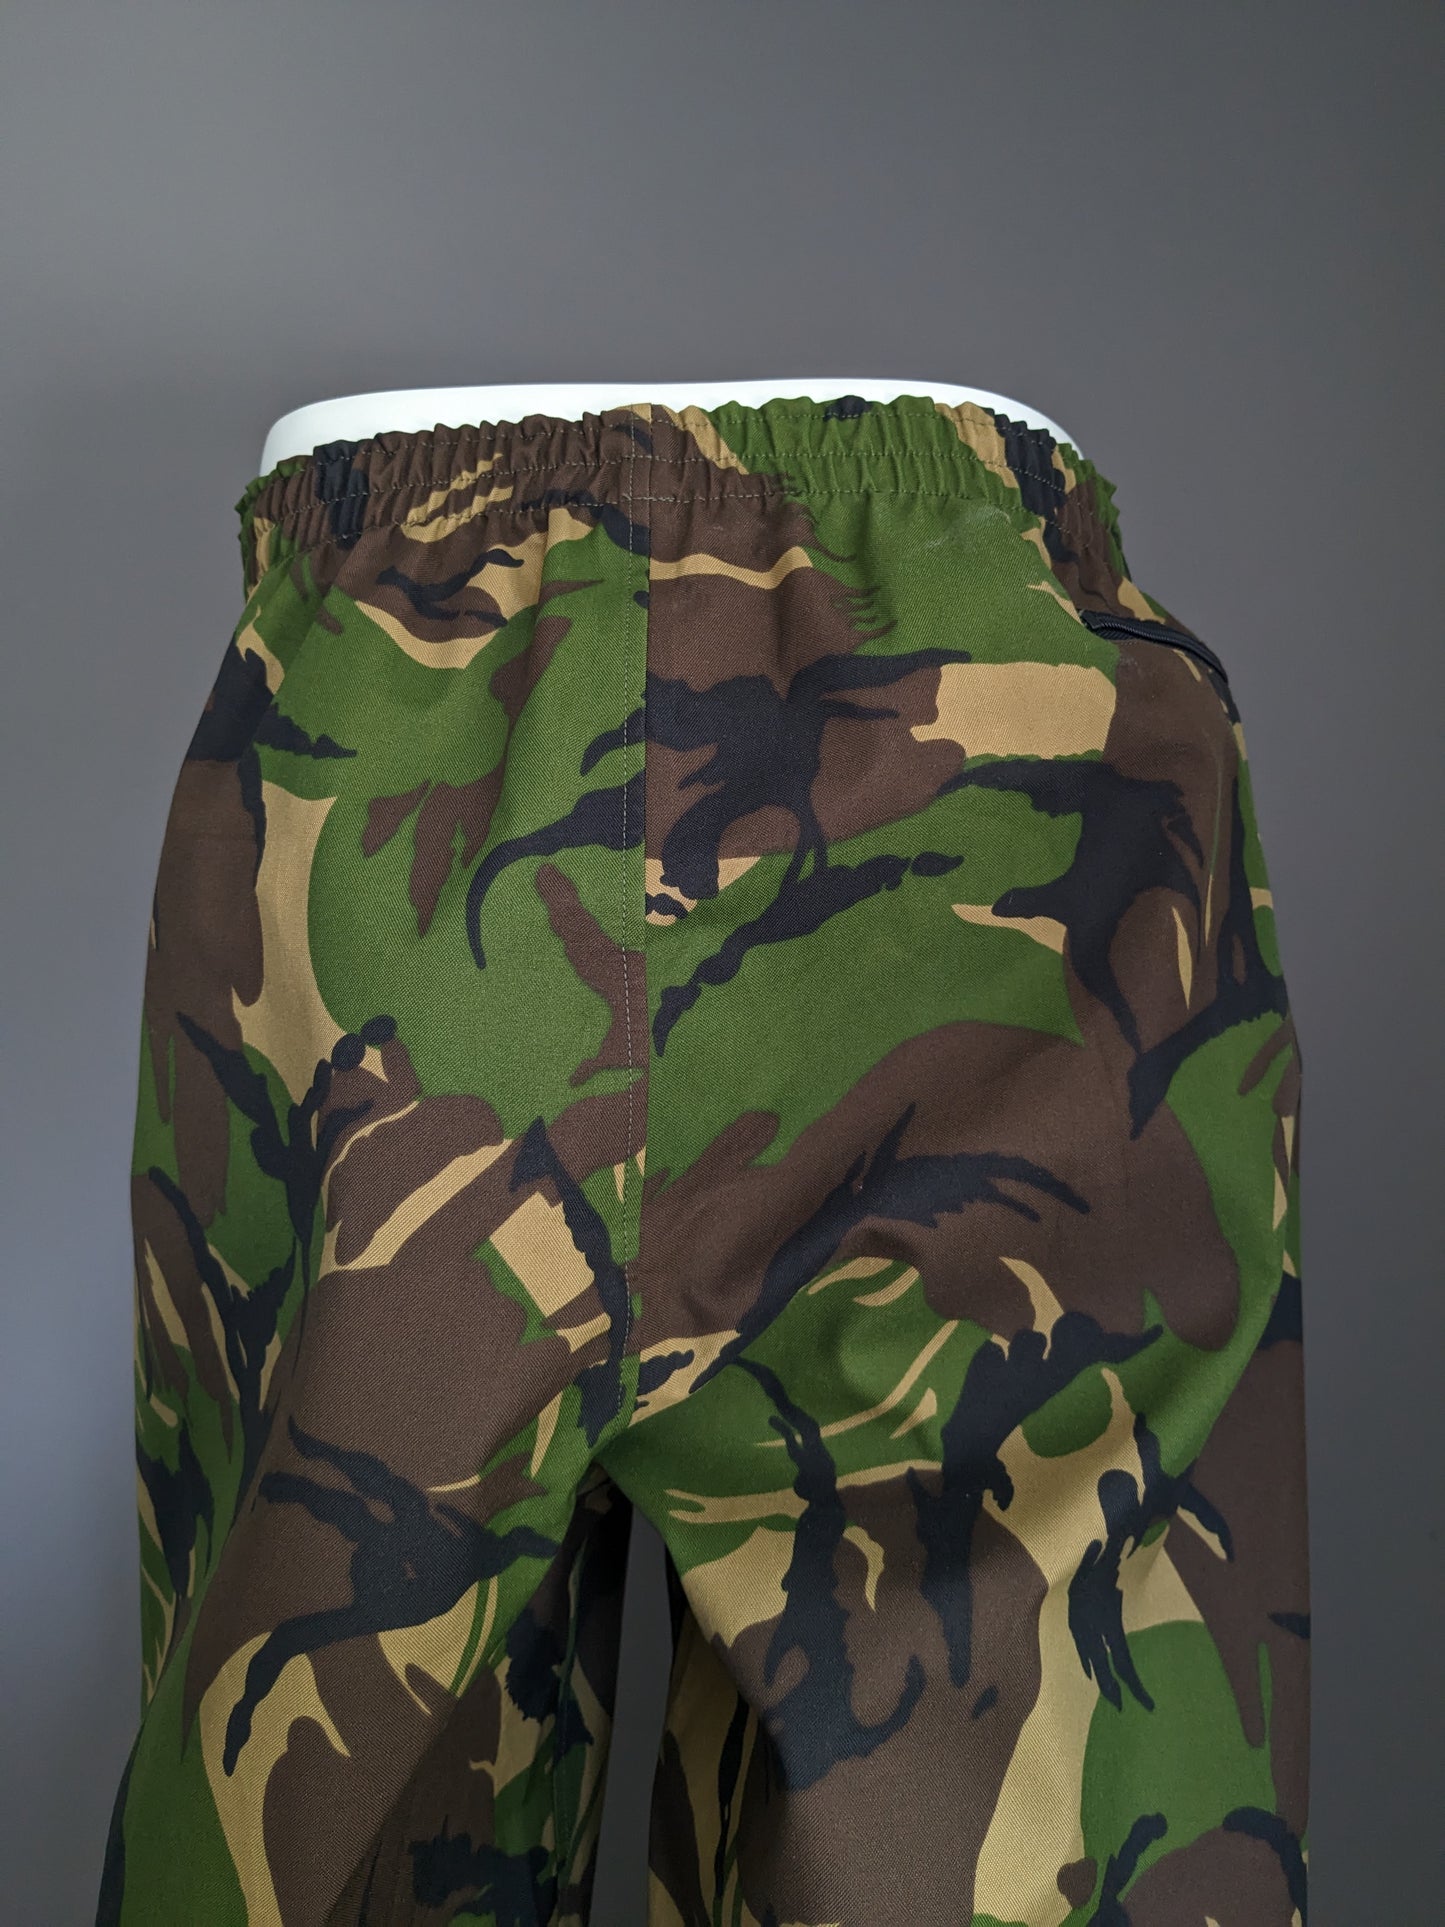 Pantalon de l'armée / de l'armée. Hydrofuge. Impression de camouflage noir vert marron. Taille M.